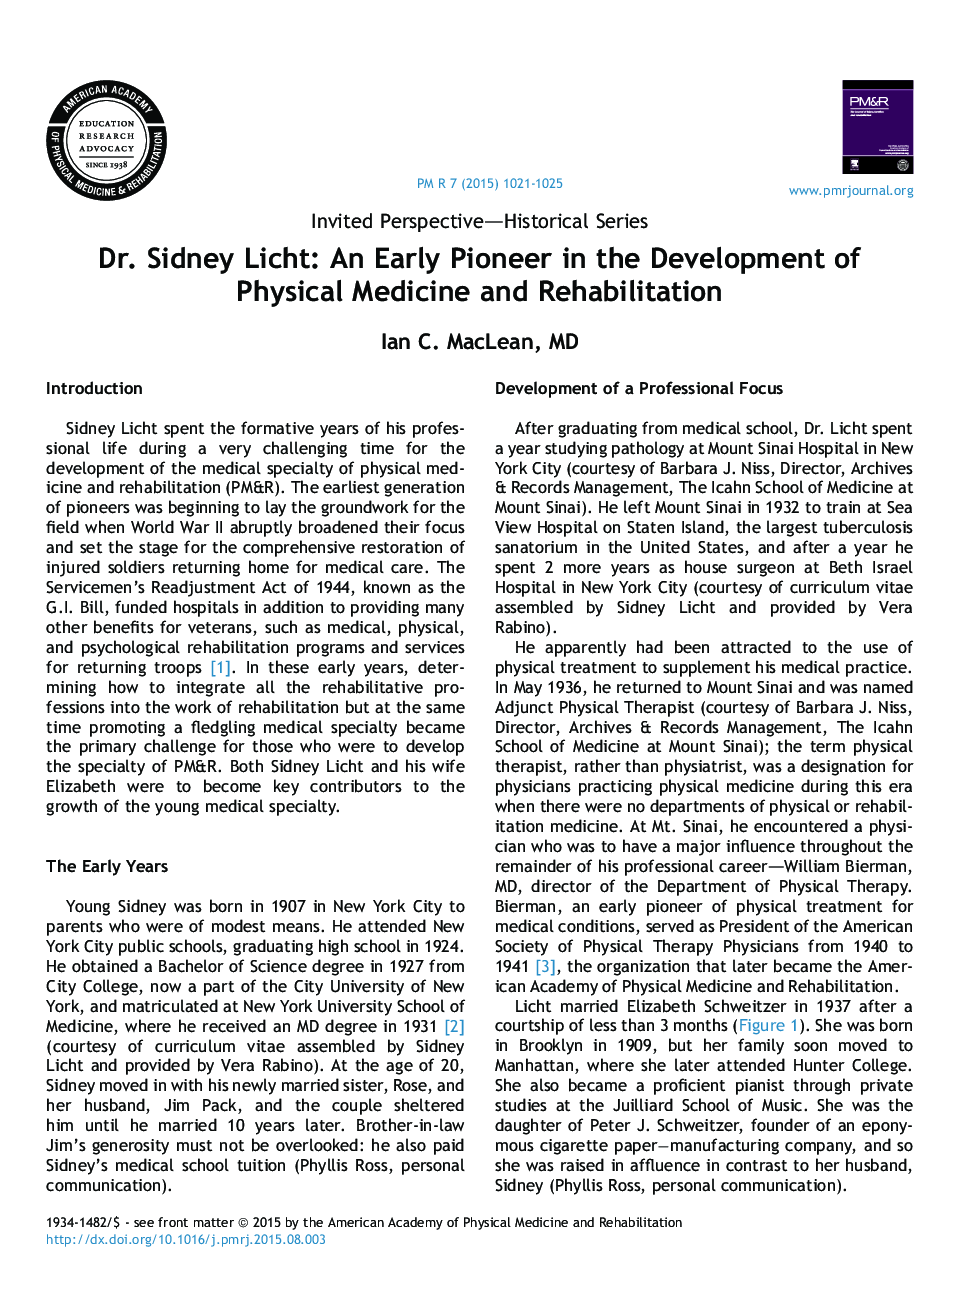 دکتر سیدنی لیچ: پیشگام اولیه در توسعه پزشکی فیزیکی و توانبخشی 